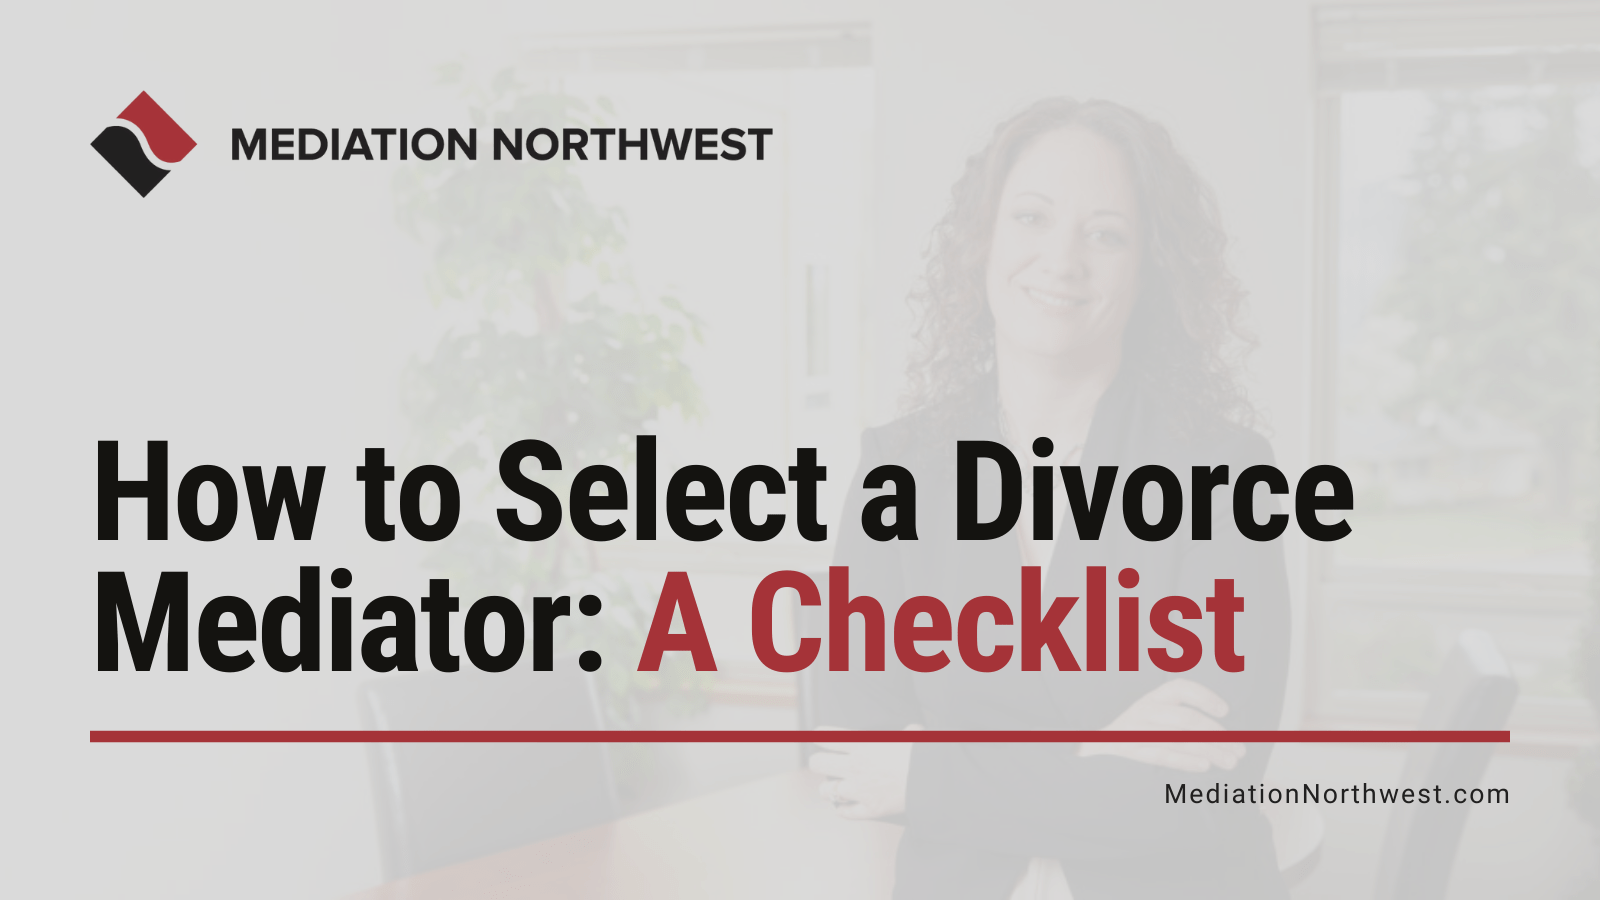 How to Select a Divorce Mediator - eugene oregon divorce mediation northwest